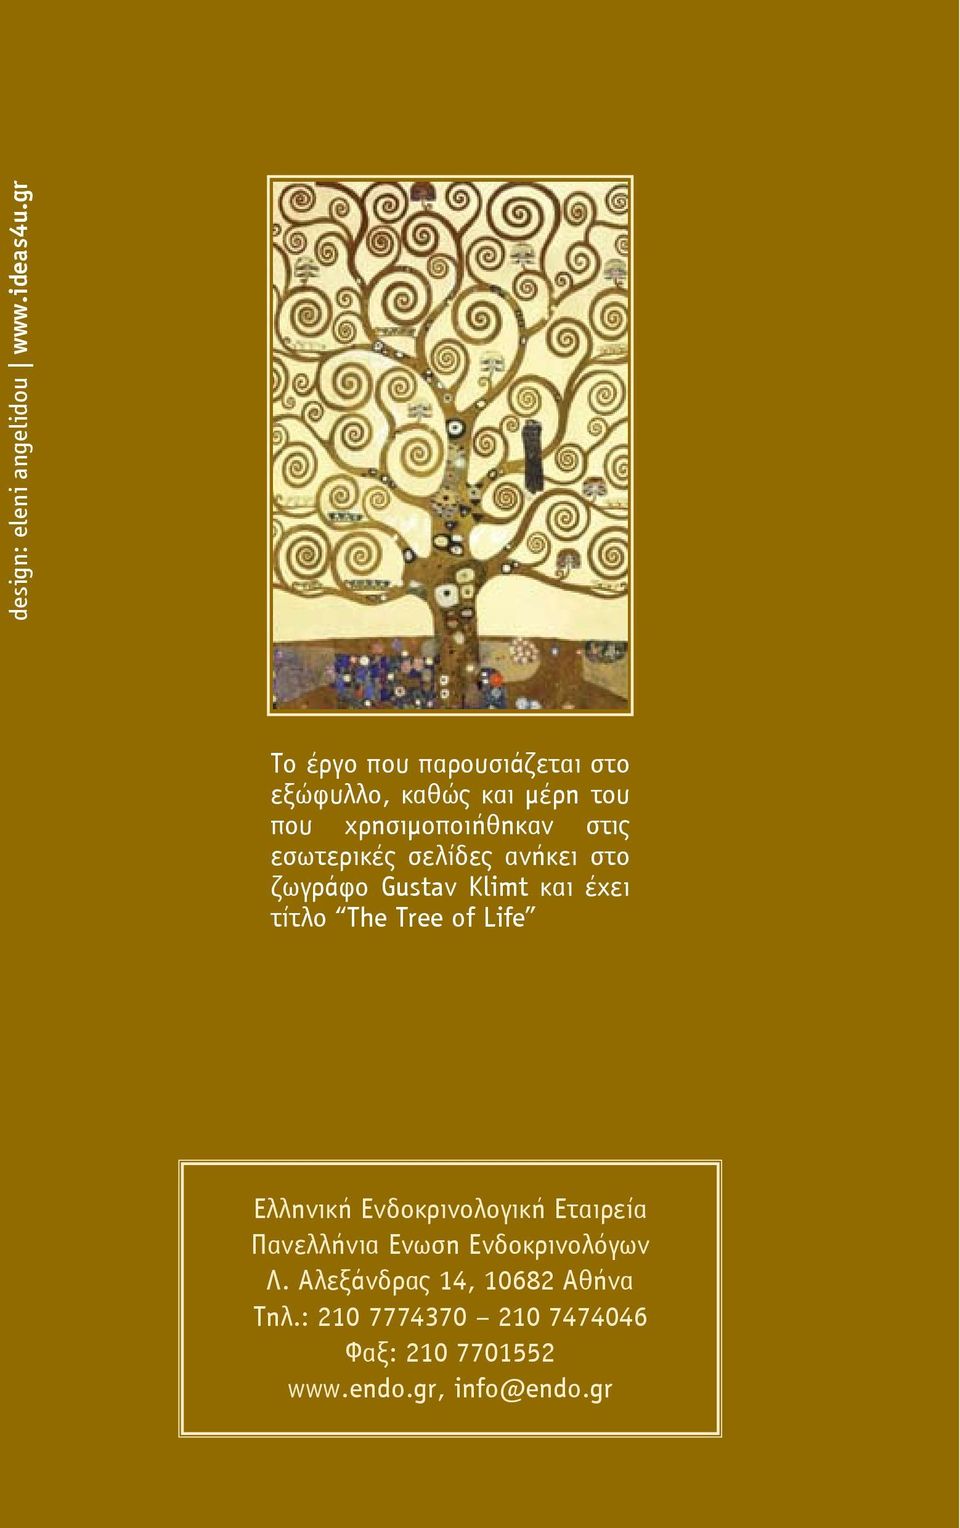 εσωτερικές σελίδες ανήκει στο ζωγράφο Gustav Klimt και έχει τίτλο Τhe Tree of Life Ελληνική